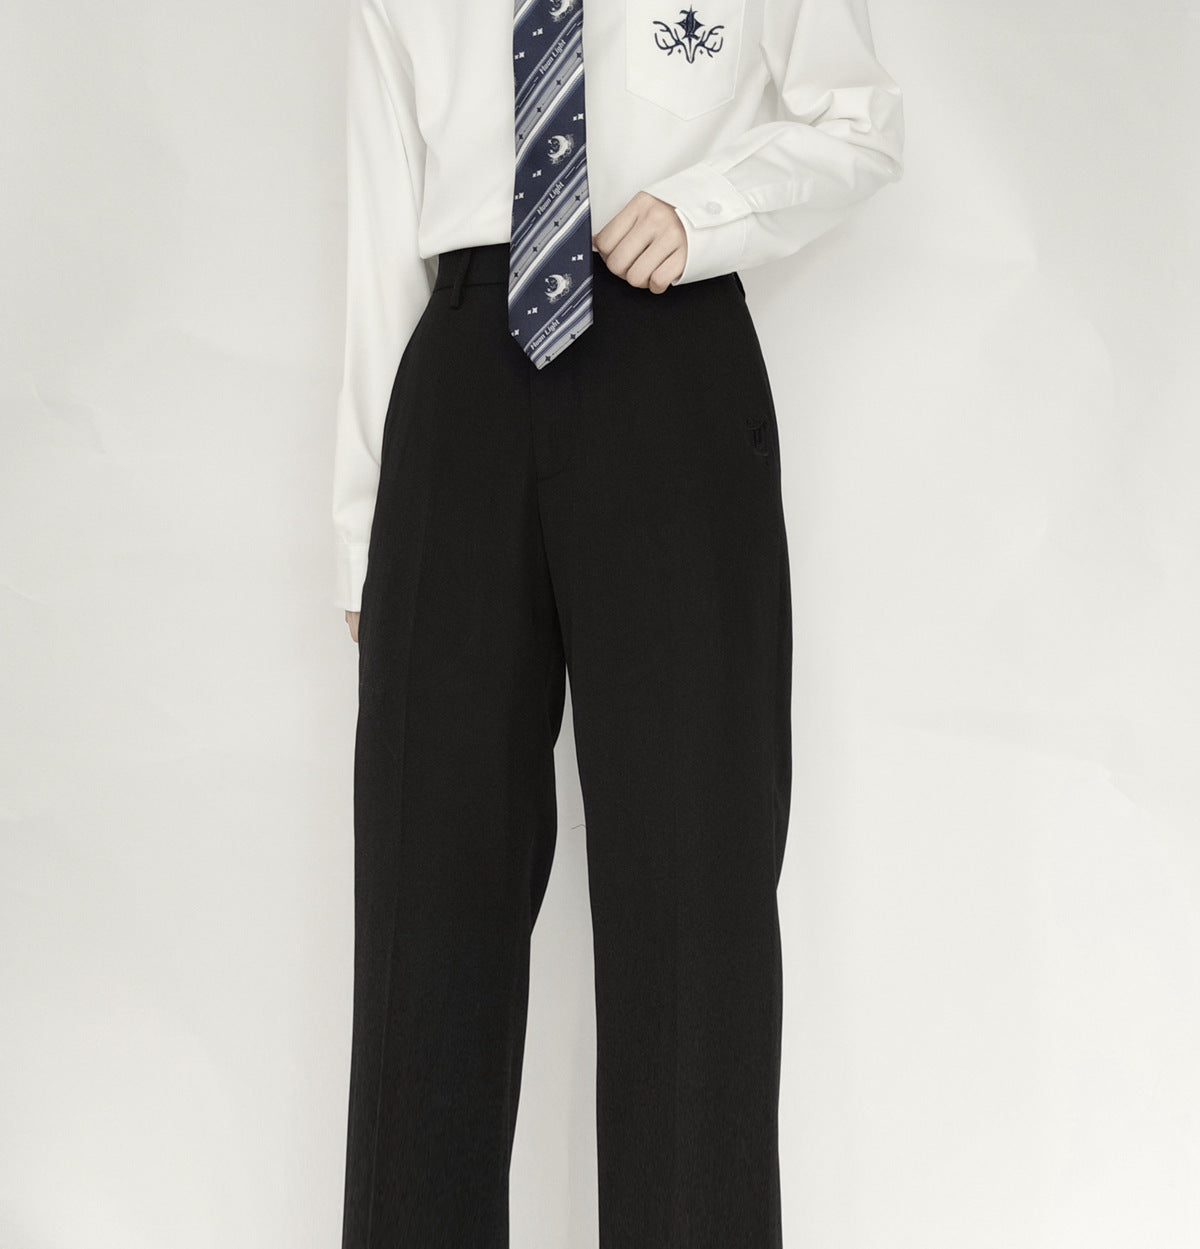 - Black Straight Leg College Men's Slacks - mens suit pants at TFC&H Co.